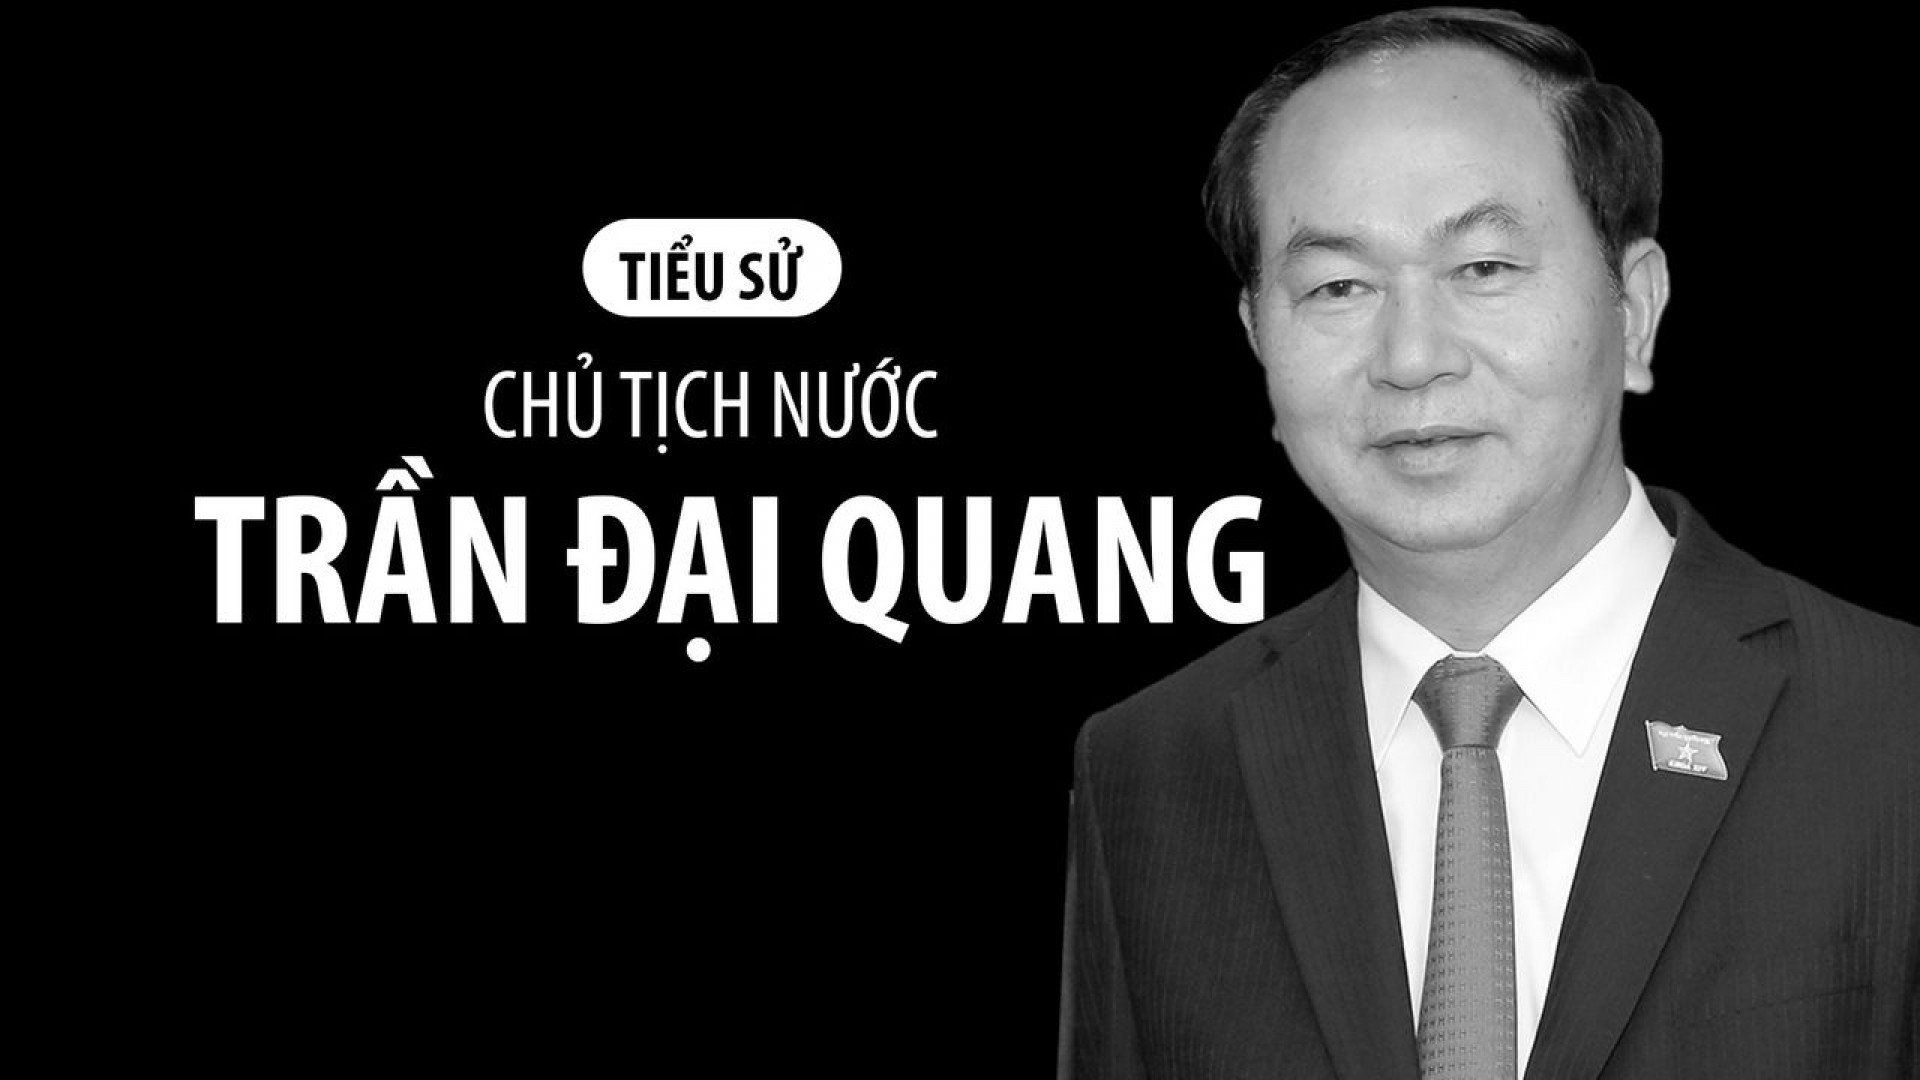 Tiểu sử tóm lược Chủ tịch nước Trần Đại Quang 